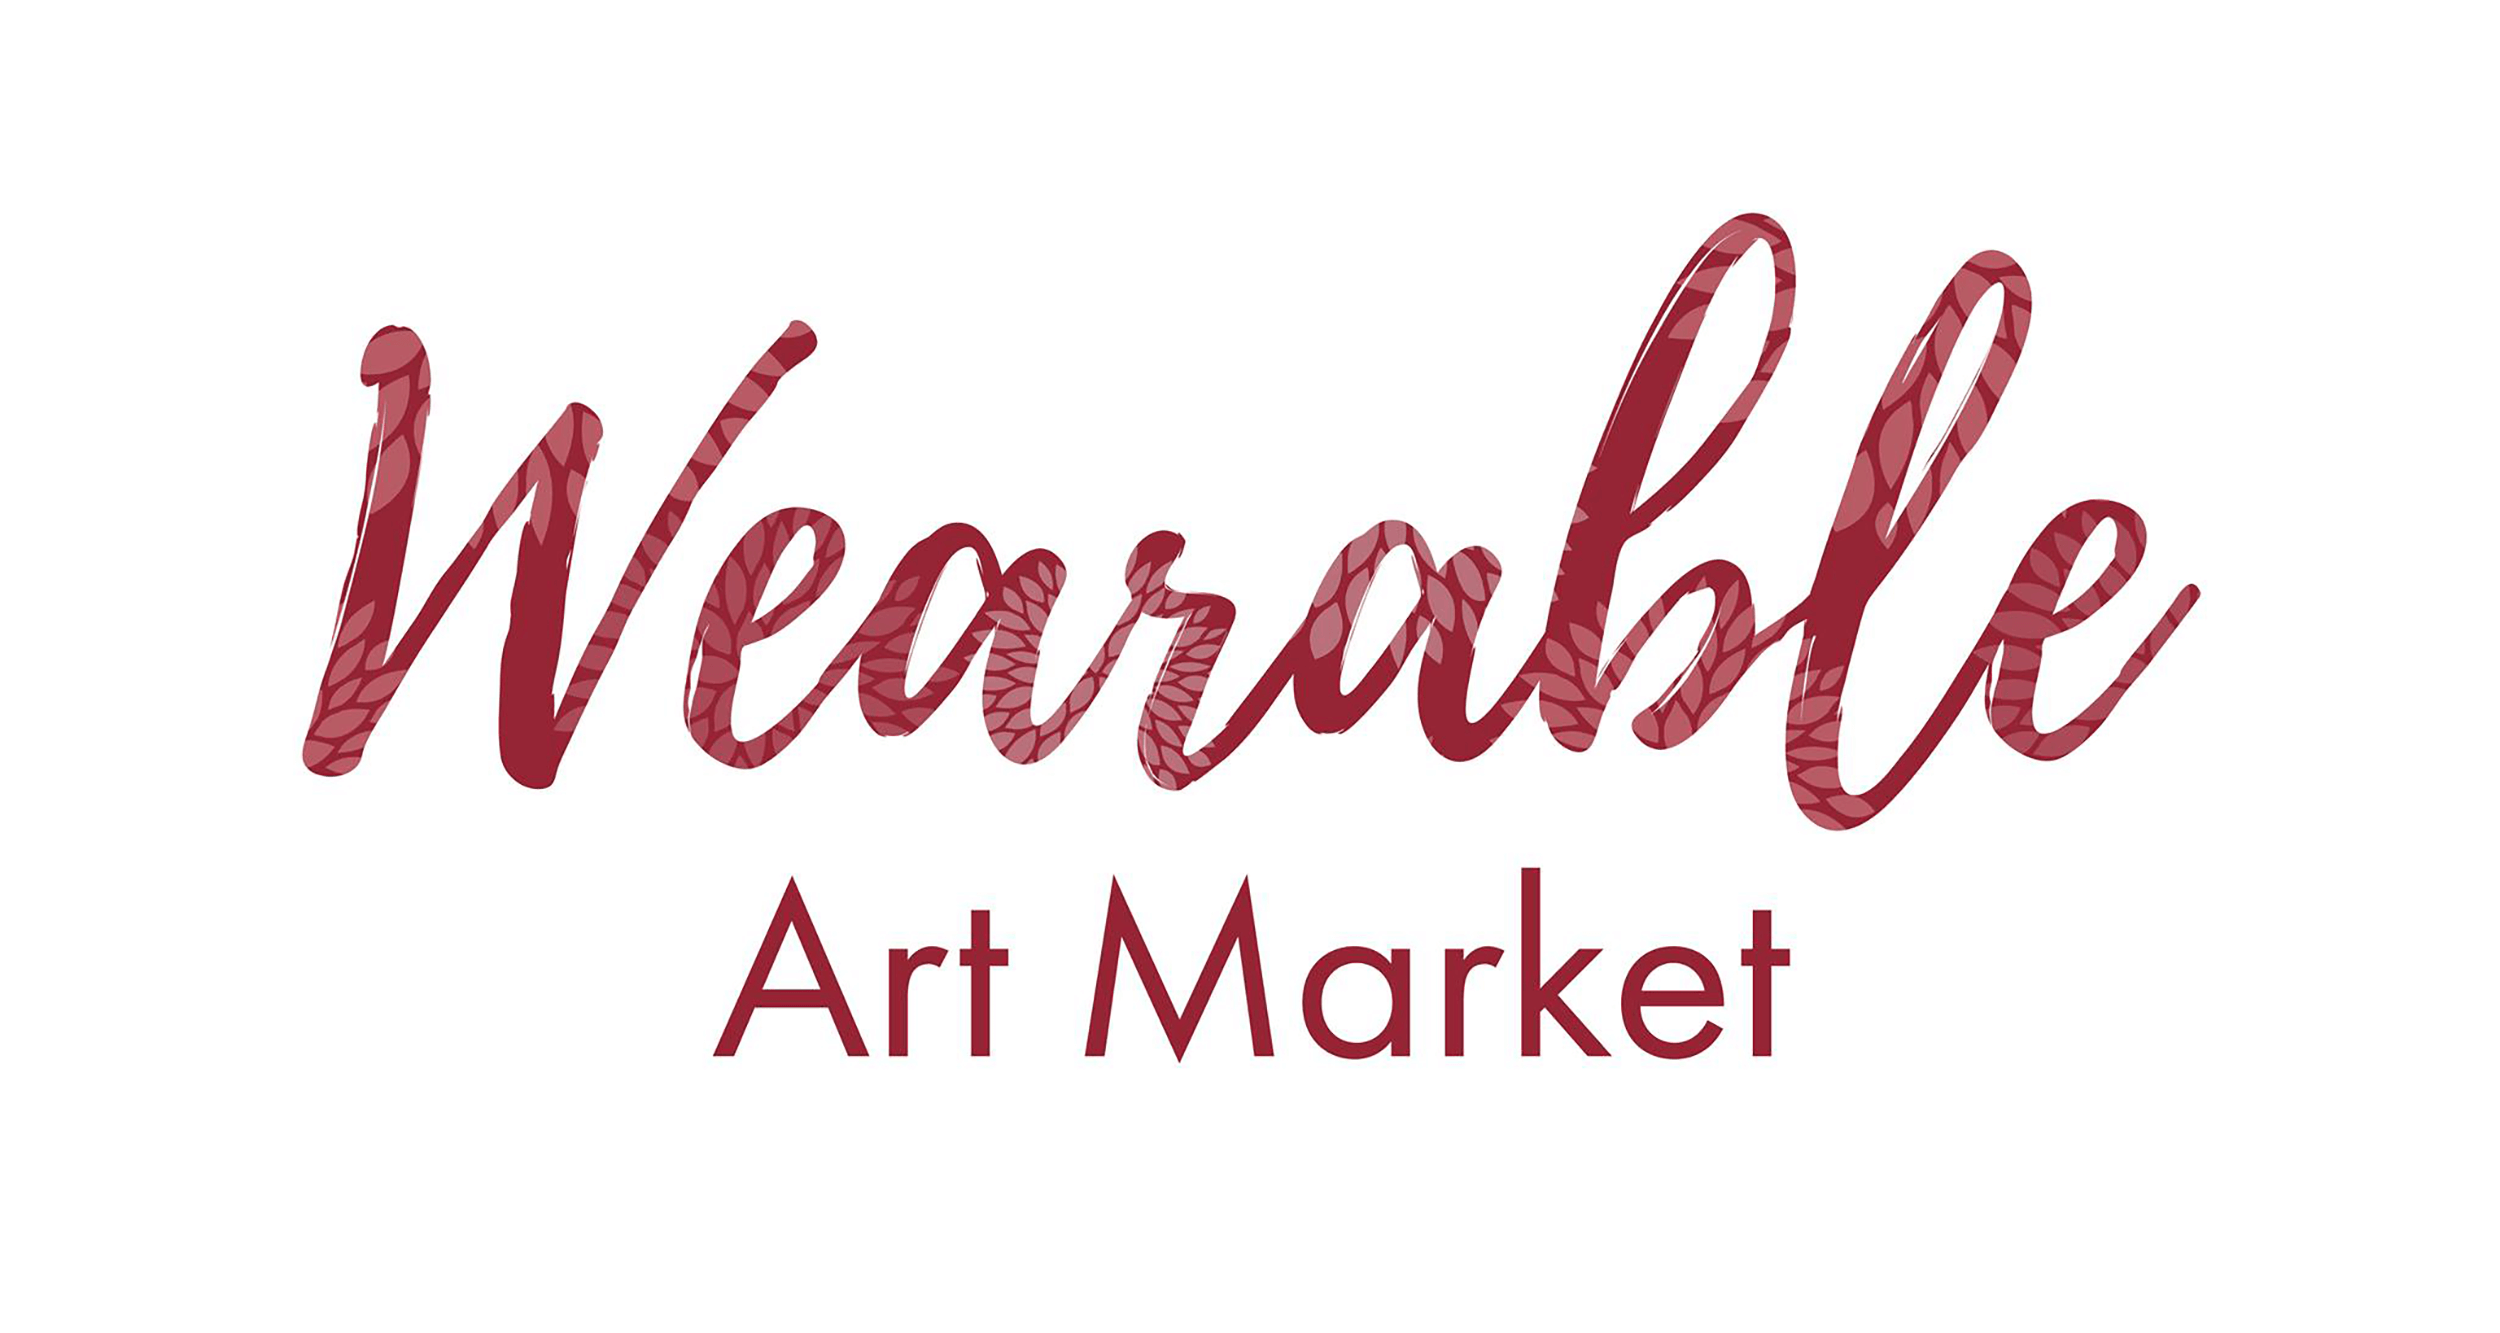 Wearable Art Market